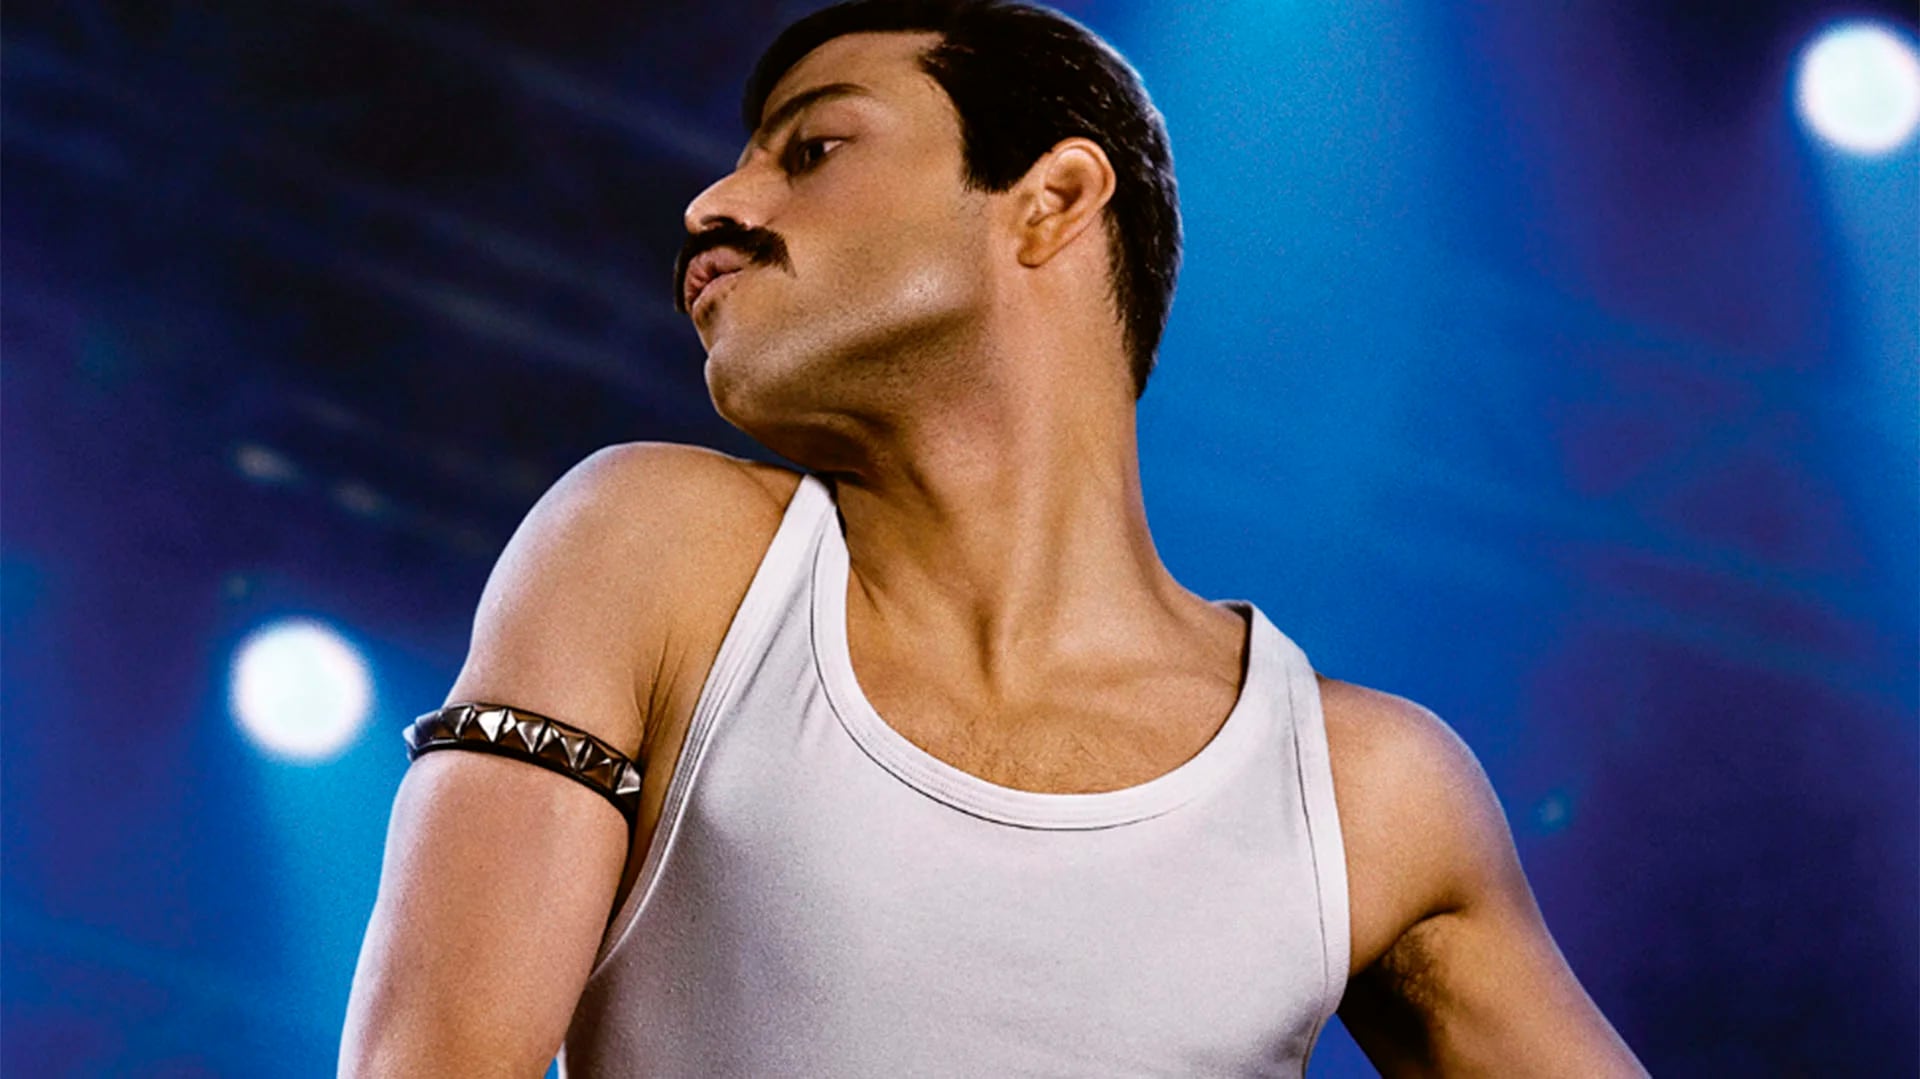 El primer tráiler de "Bohemian Rhapsody", la película sobre Queen Freddie - Infobae